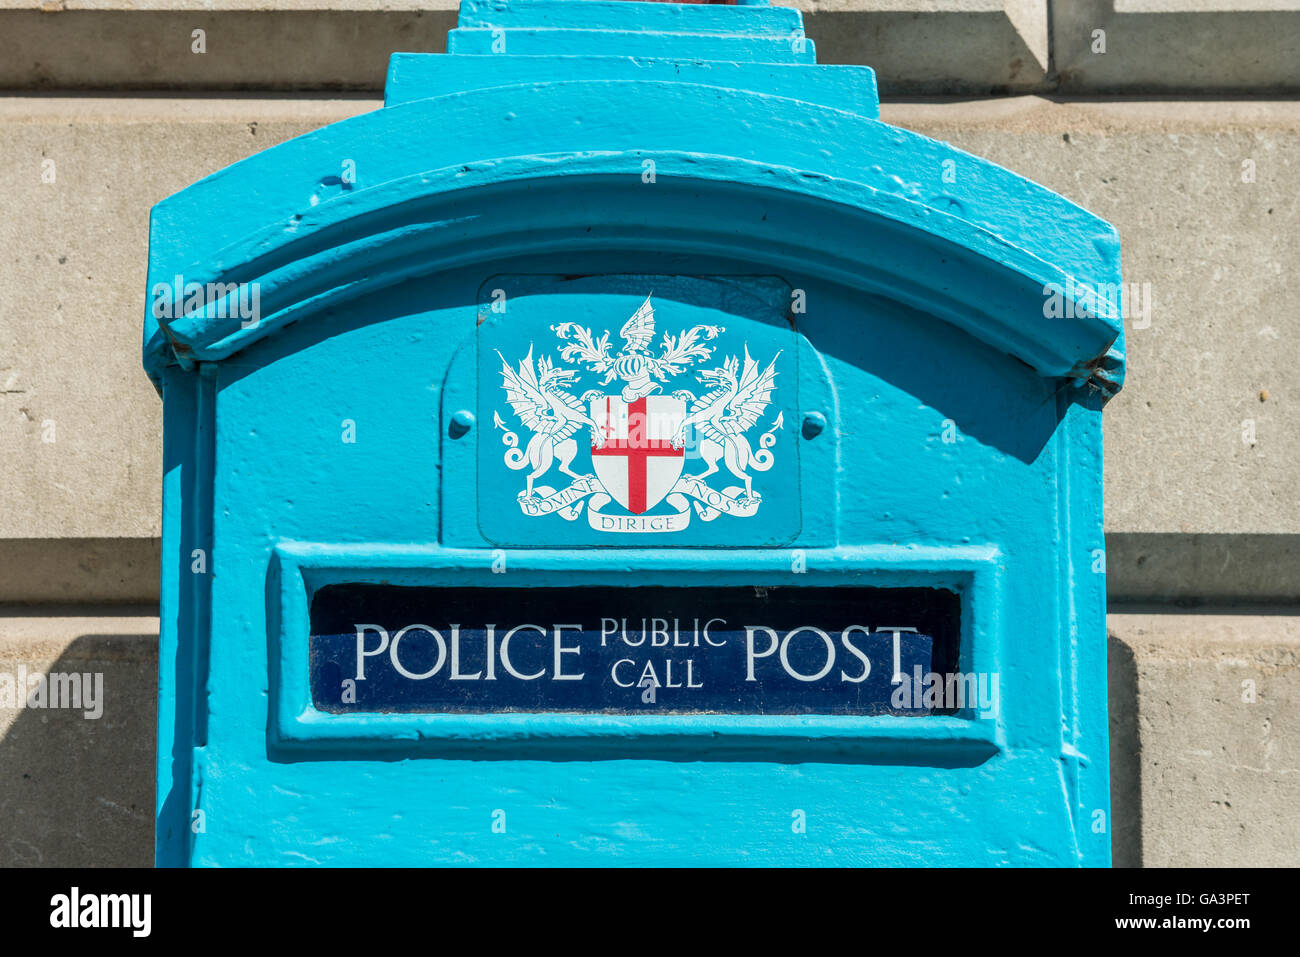 Londres, Royaume-Uni - 25 juin 2016 : London police appel public fort. Le bleu de la police d'origine qui a été fort téléphone libre d'utilisation Banque D'Images